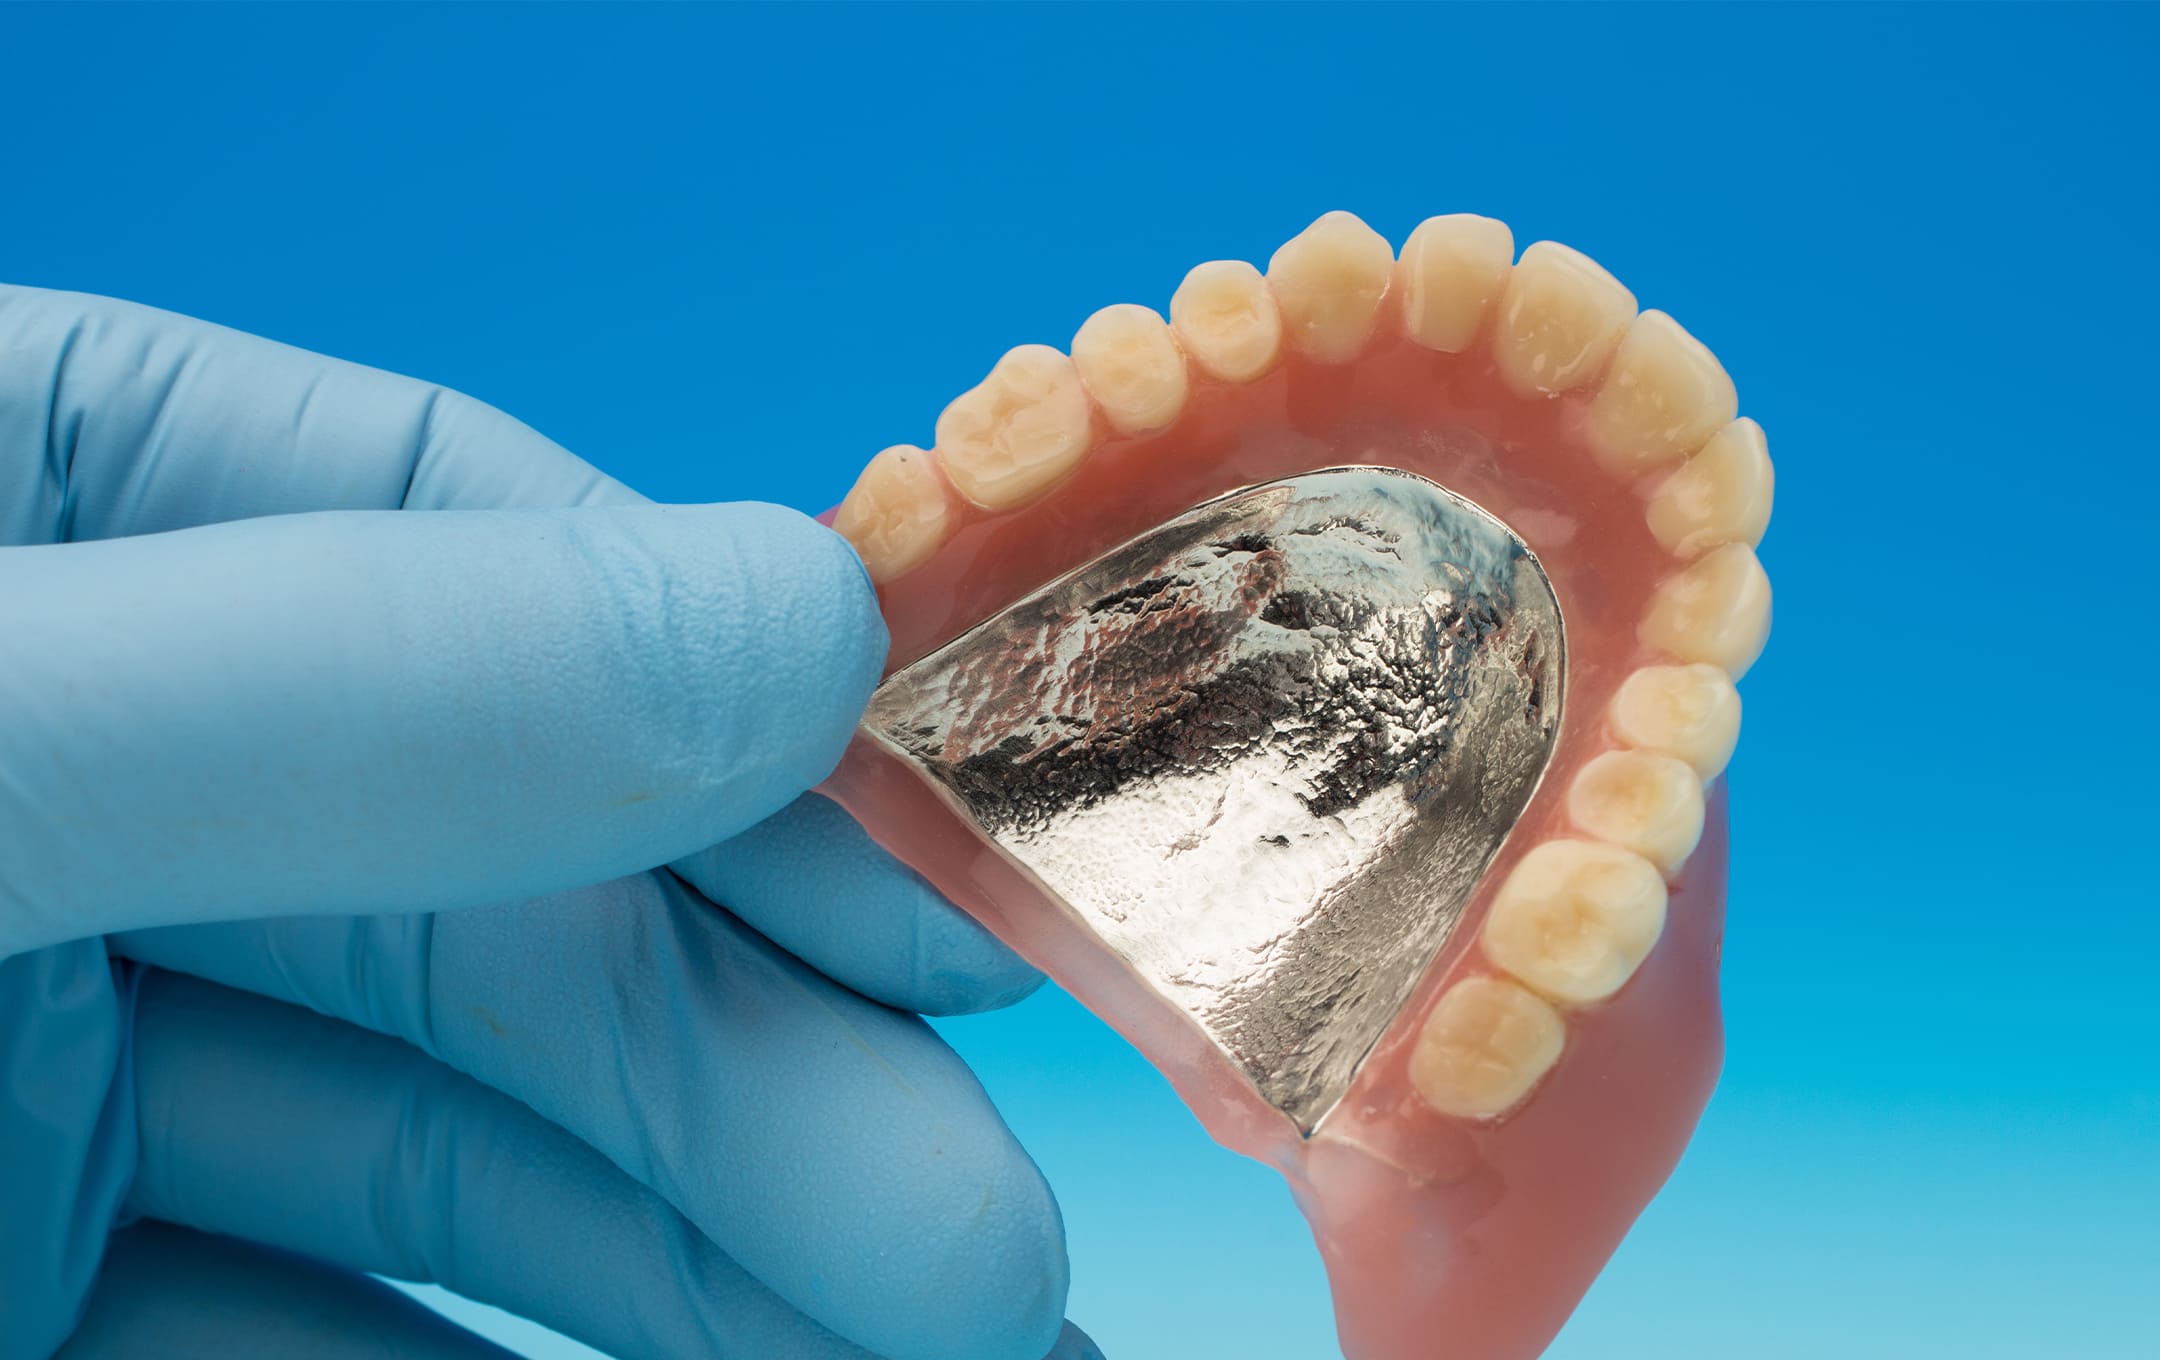 自費診療の入れ歯の特徴